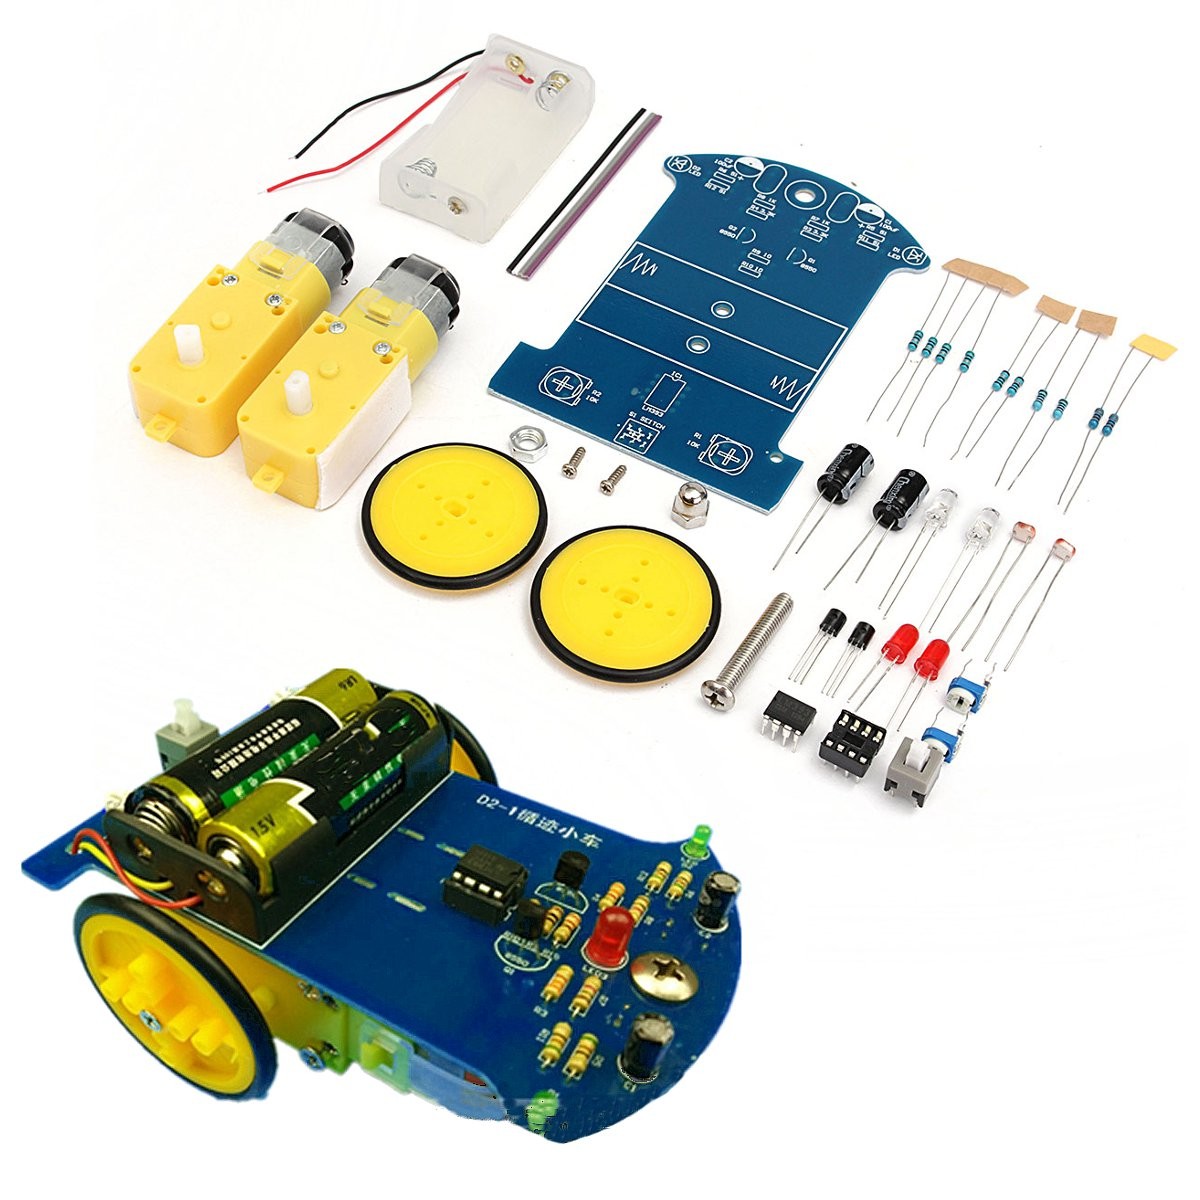 

3V Tracking Smart Robot Car DIY Kit With Reduction Motor Set